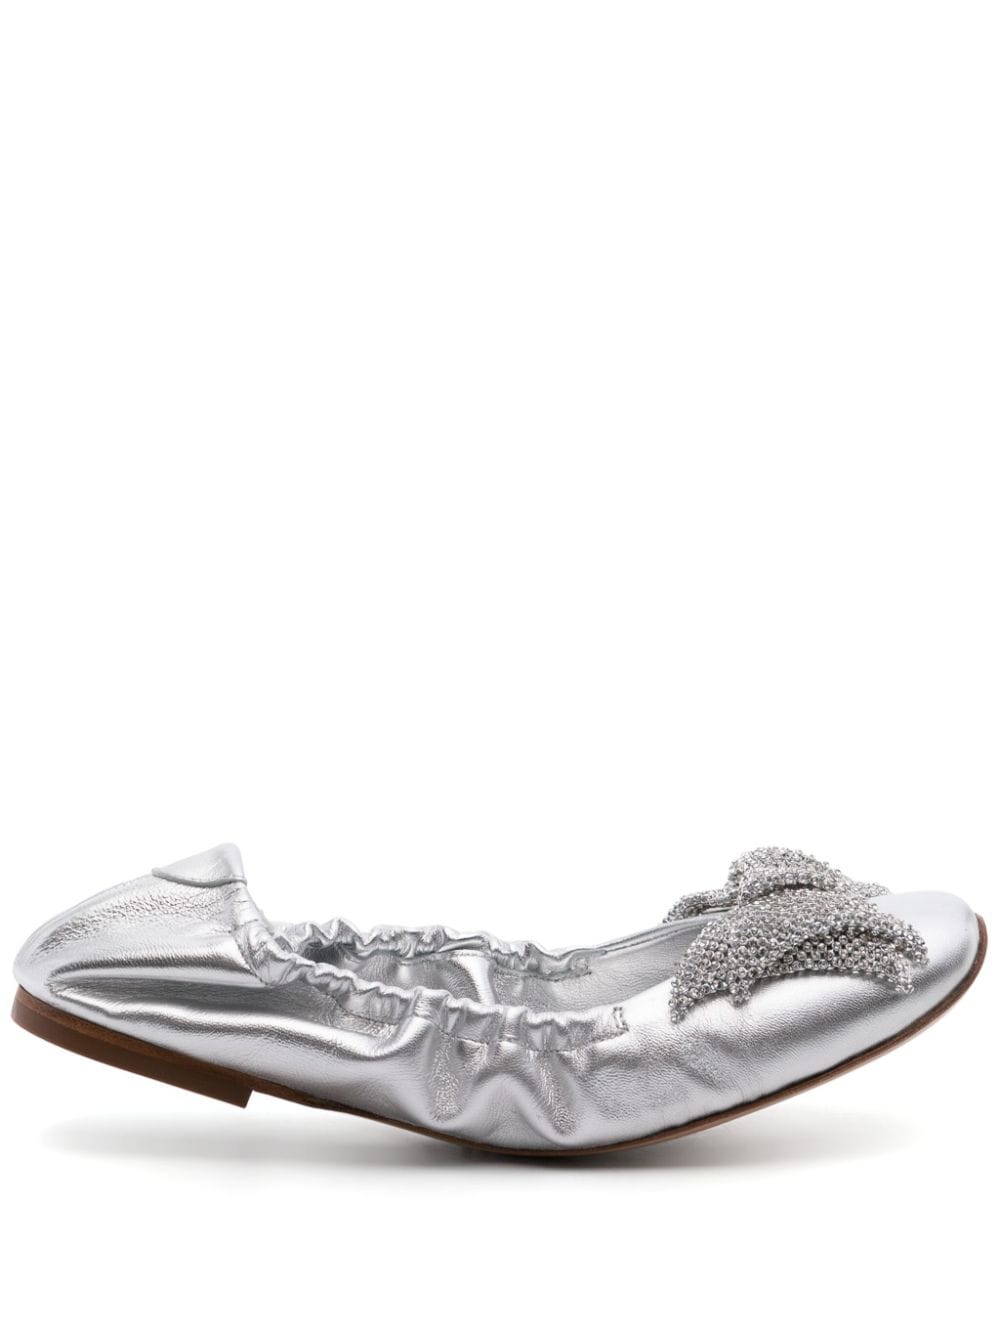 Casadei bow-detail metallic ballerina shoes - Silver von Casadei